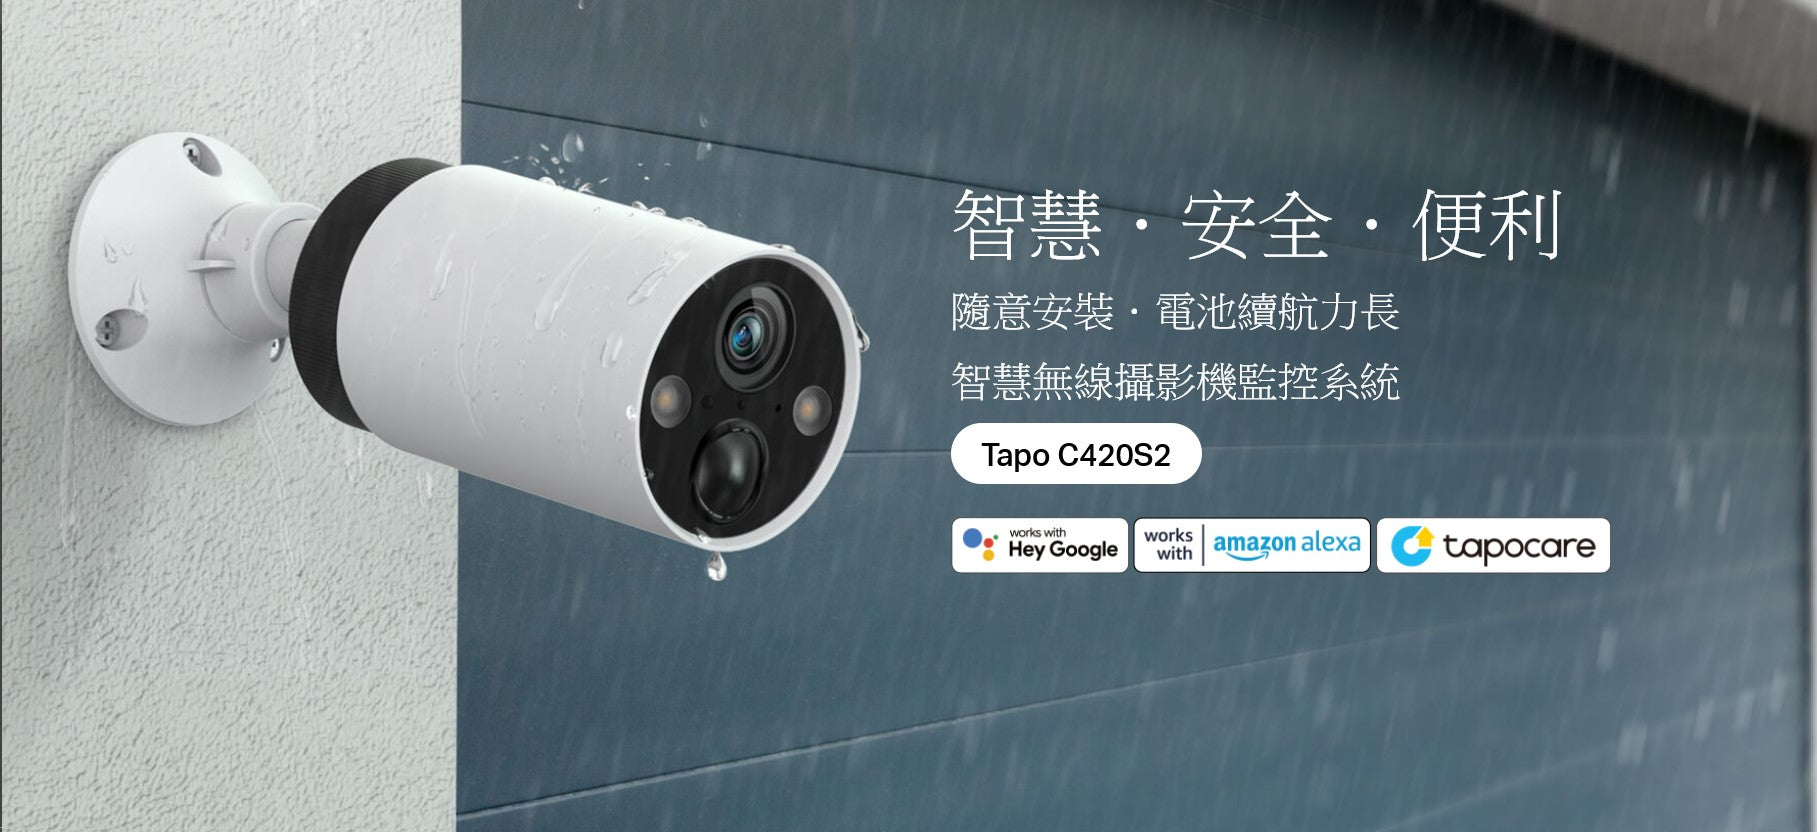 TP-LINK | 1440P 無線電池網絡攝影機 Tapo C420S2 (兩鏡裝)